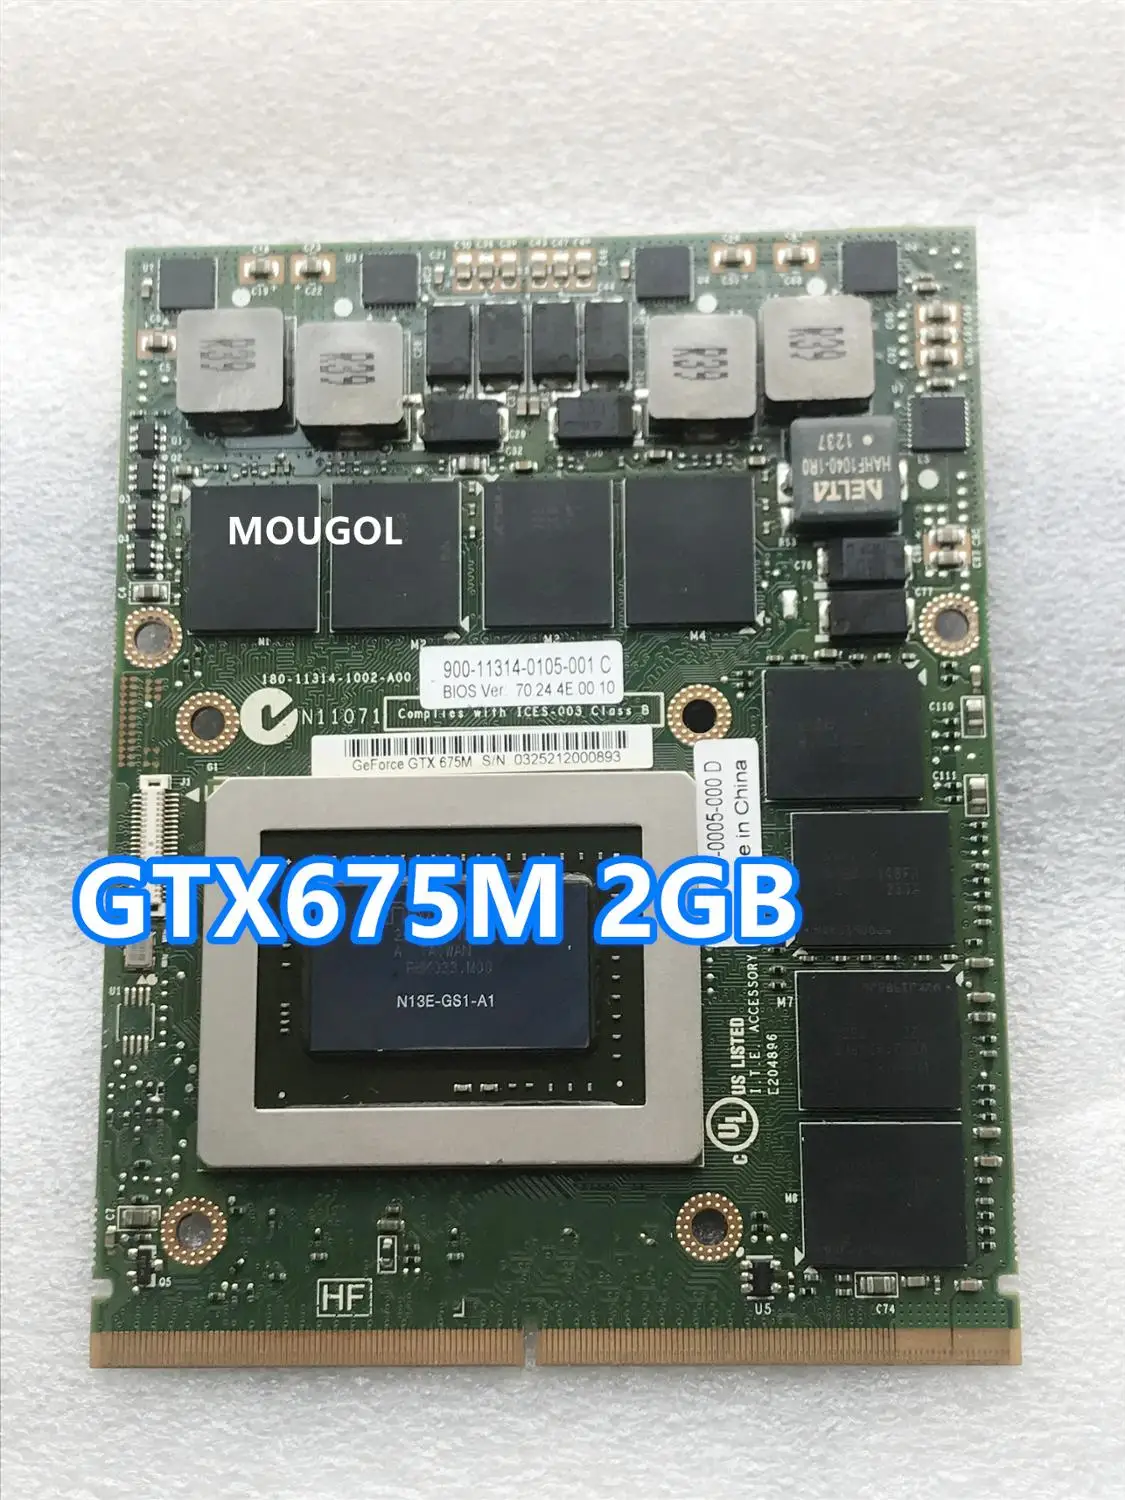 

GTX675M GTX 675M N13E-GS1-A1 Video VGA CARD FOR Laptop MSI GT70 GT60 GX660R GT660 GT680 GT683DX GT783DX